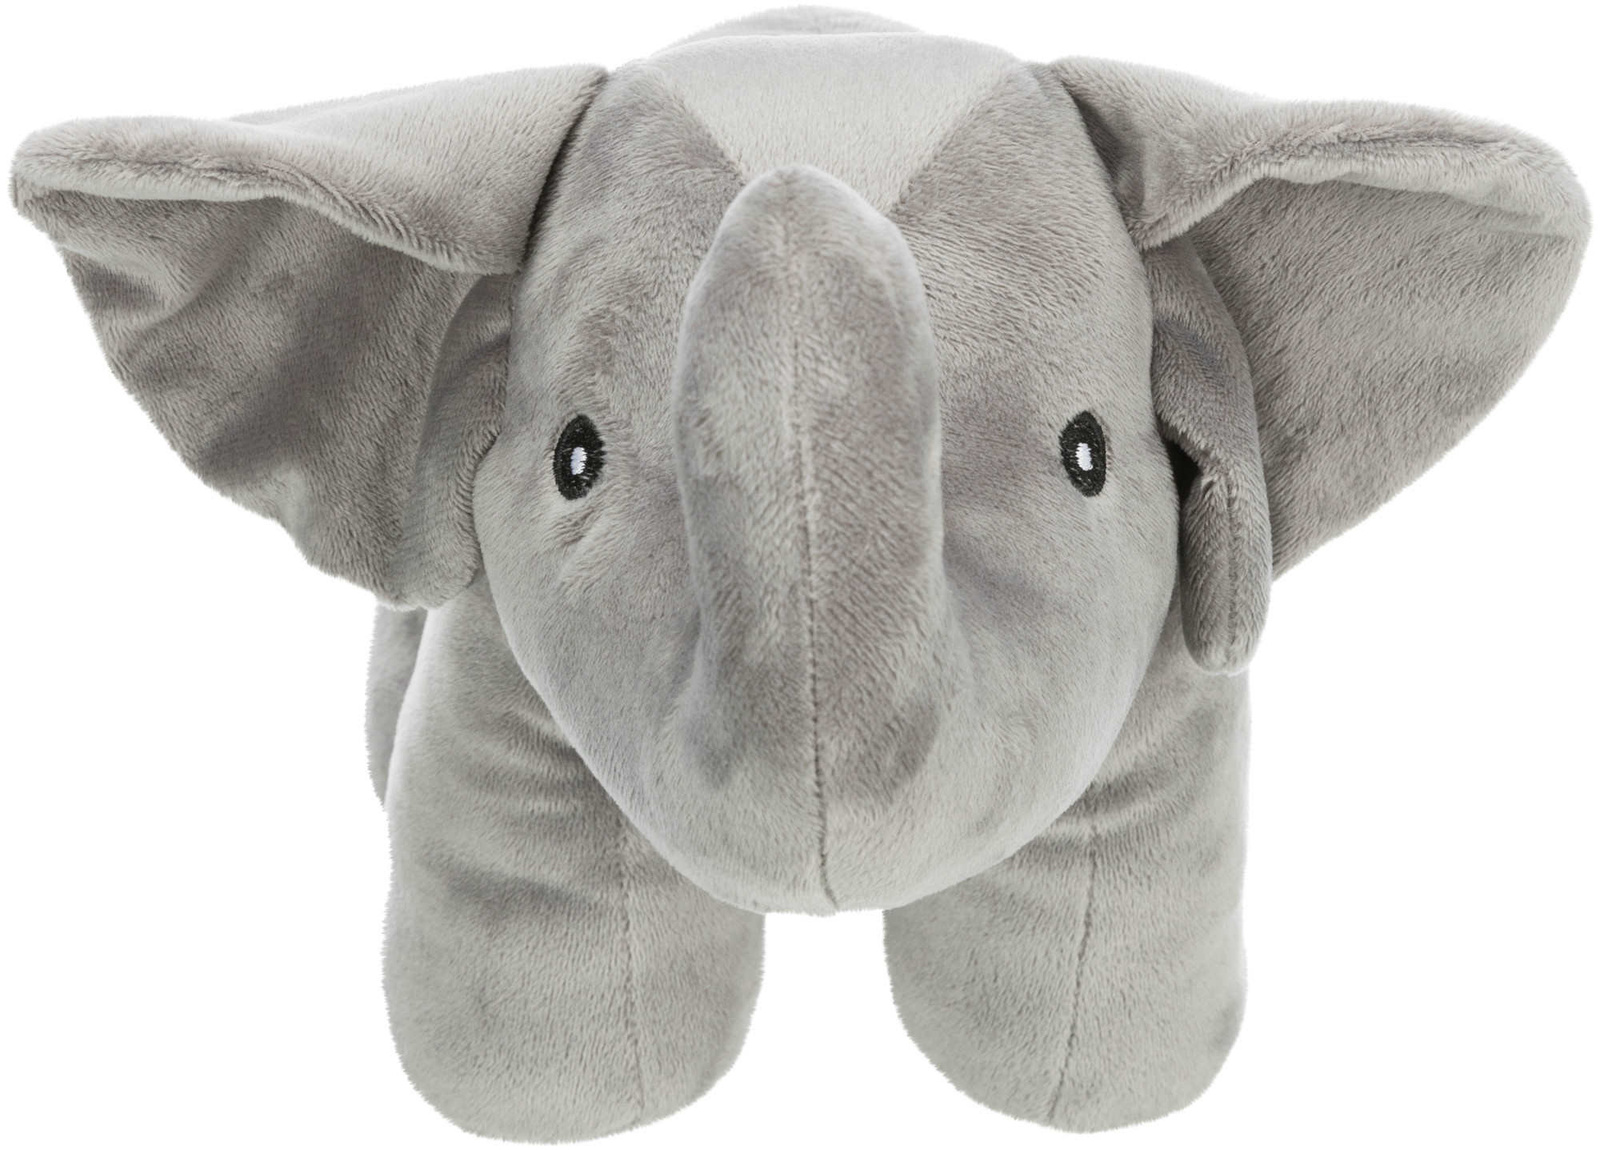 Trixie Trixie игрушка Слон, плюш (36 см) игрушка для собак trixie слон плюш 36см